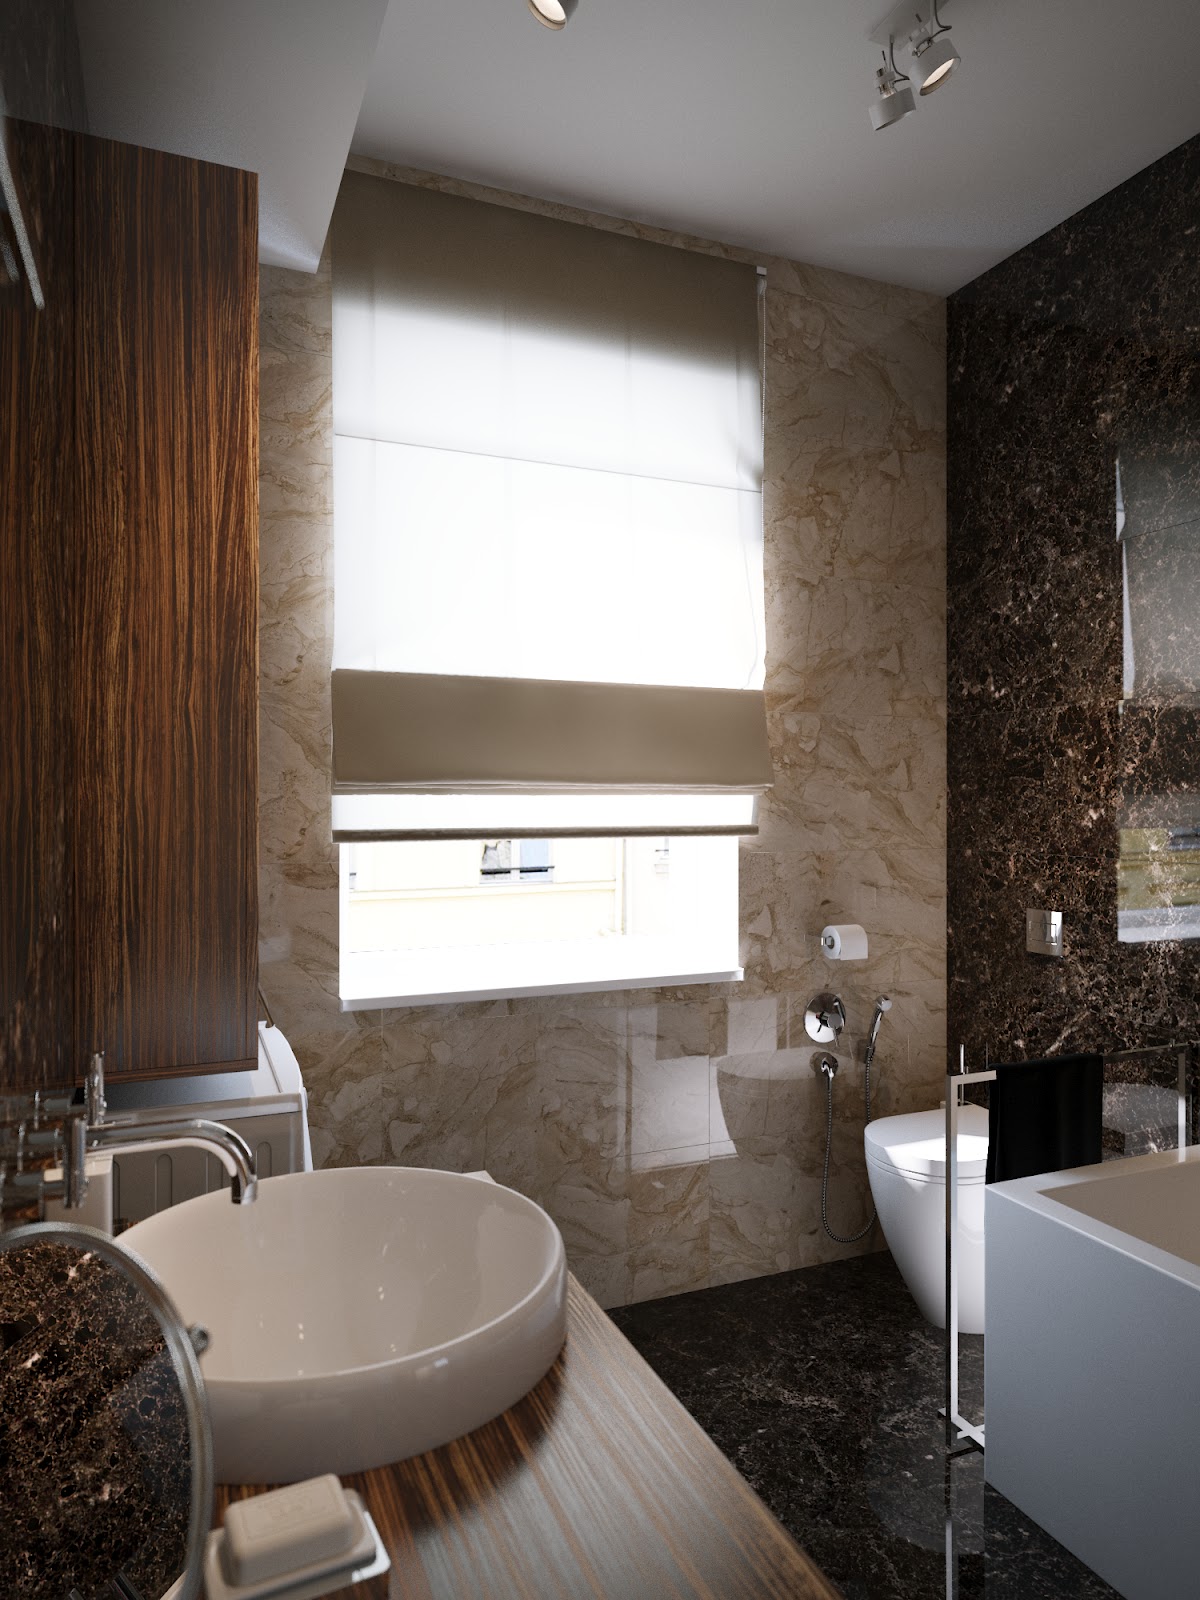  Modern bathroom design schemeInterior Design Ideas.